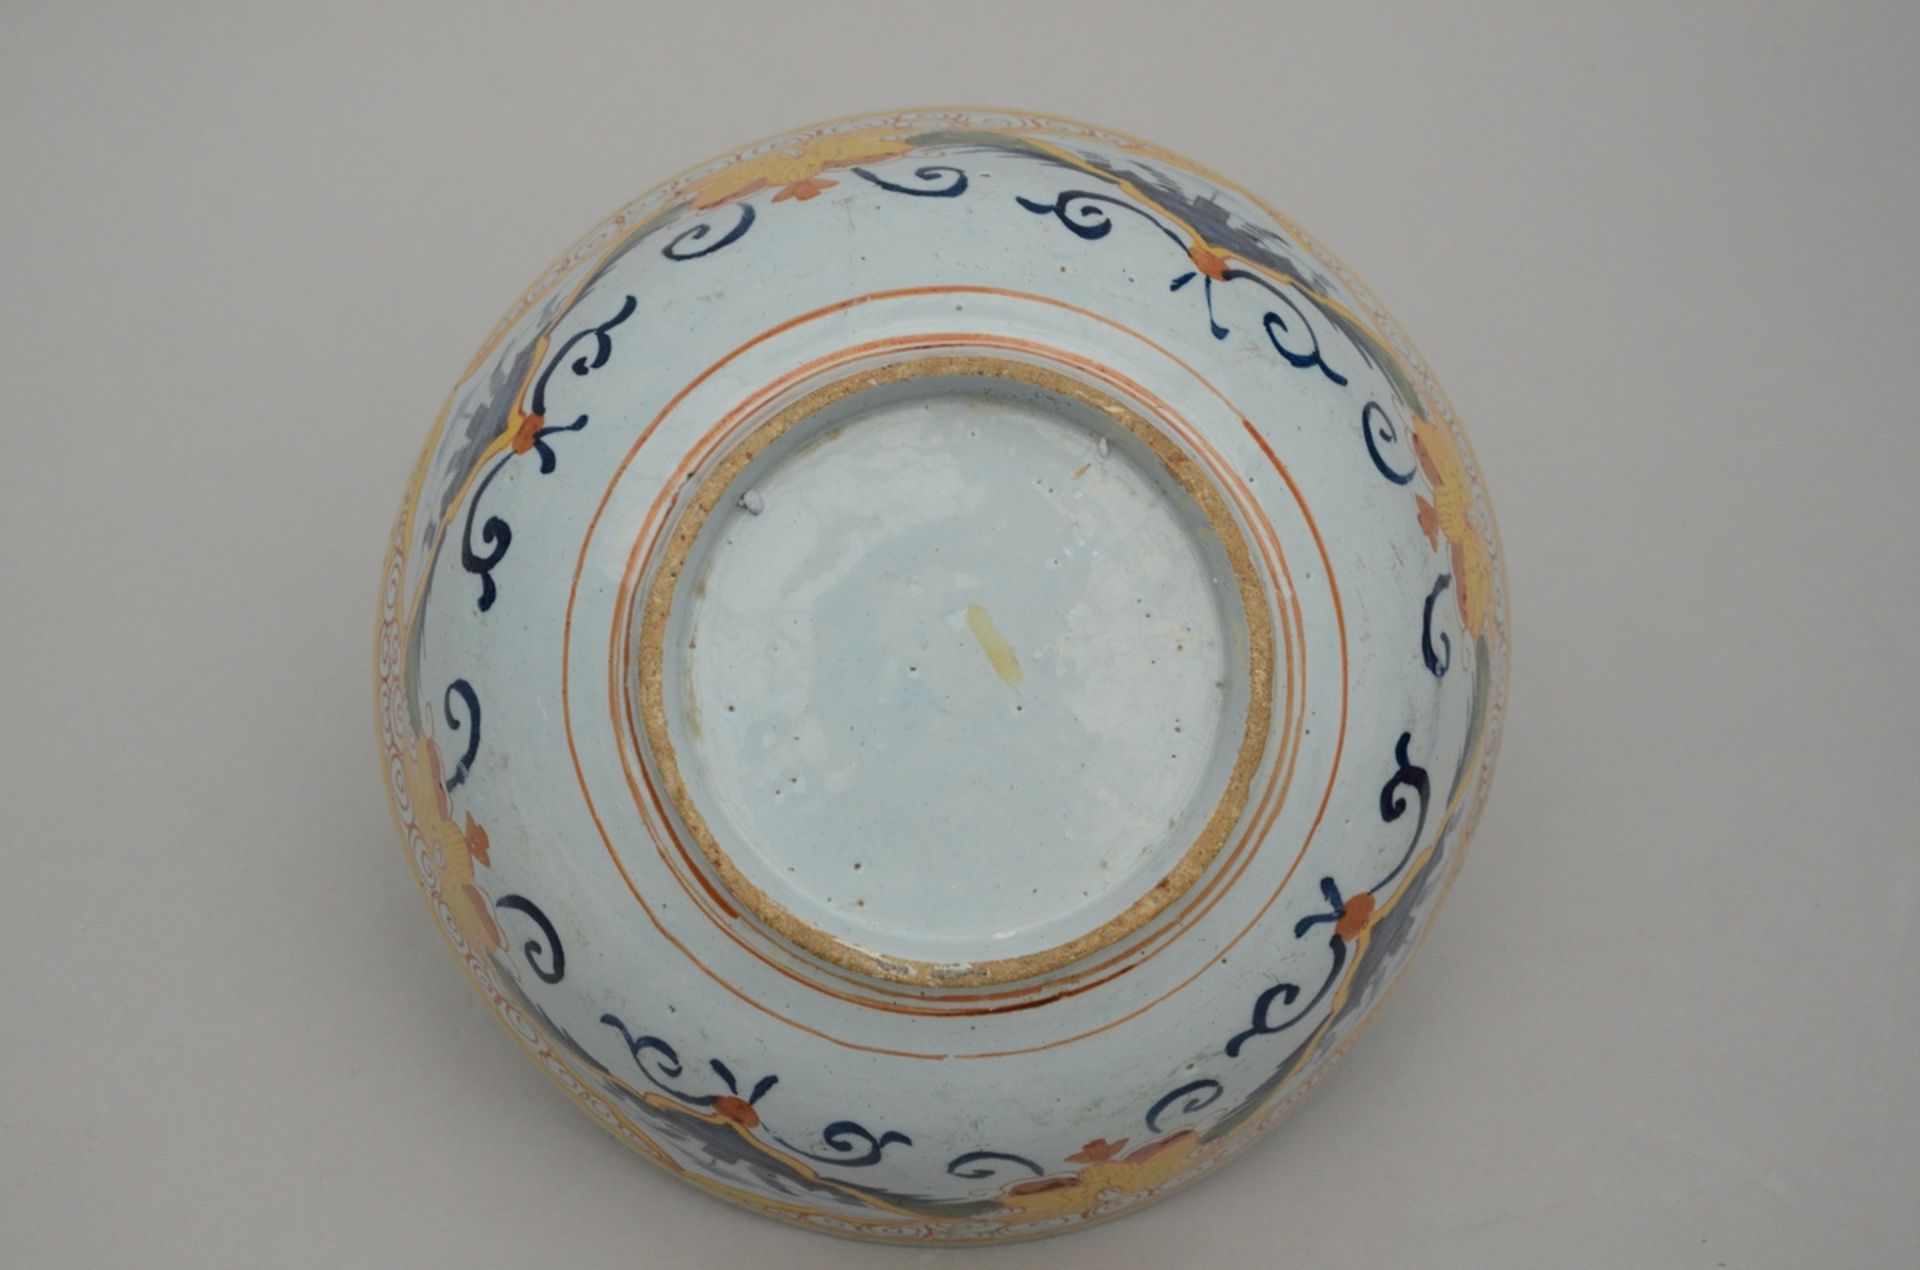 A Delft polychrome bowl 18th Century (h11.5 dia25.5cm) - Image 3 of 3